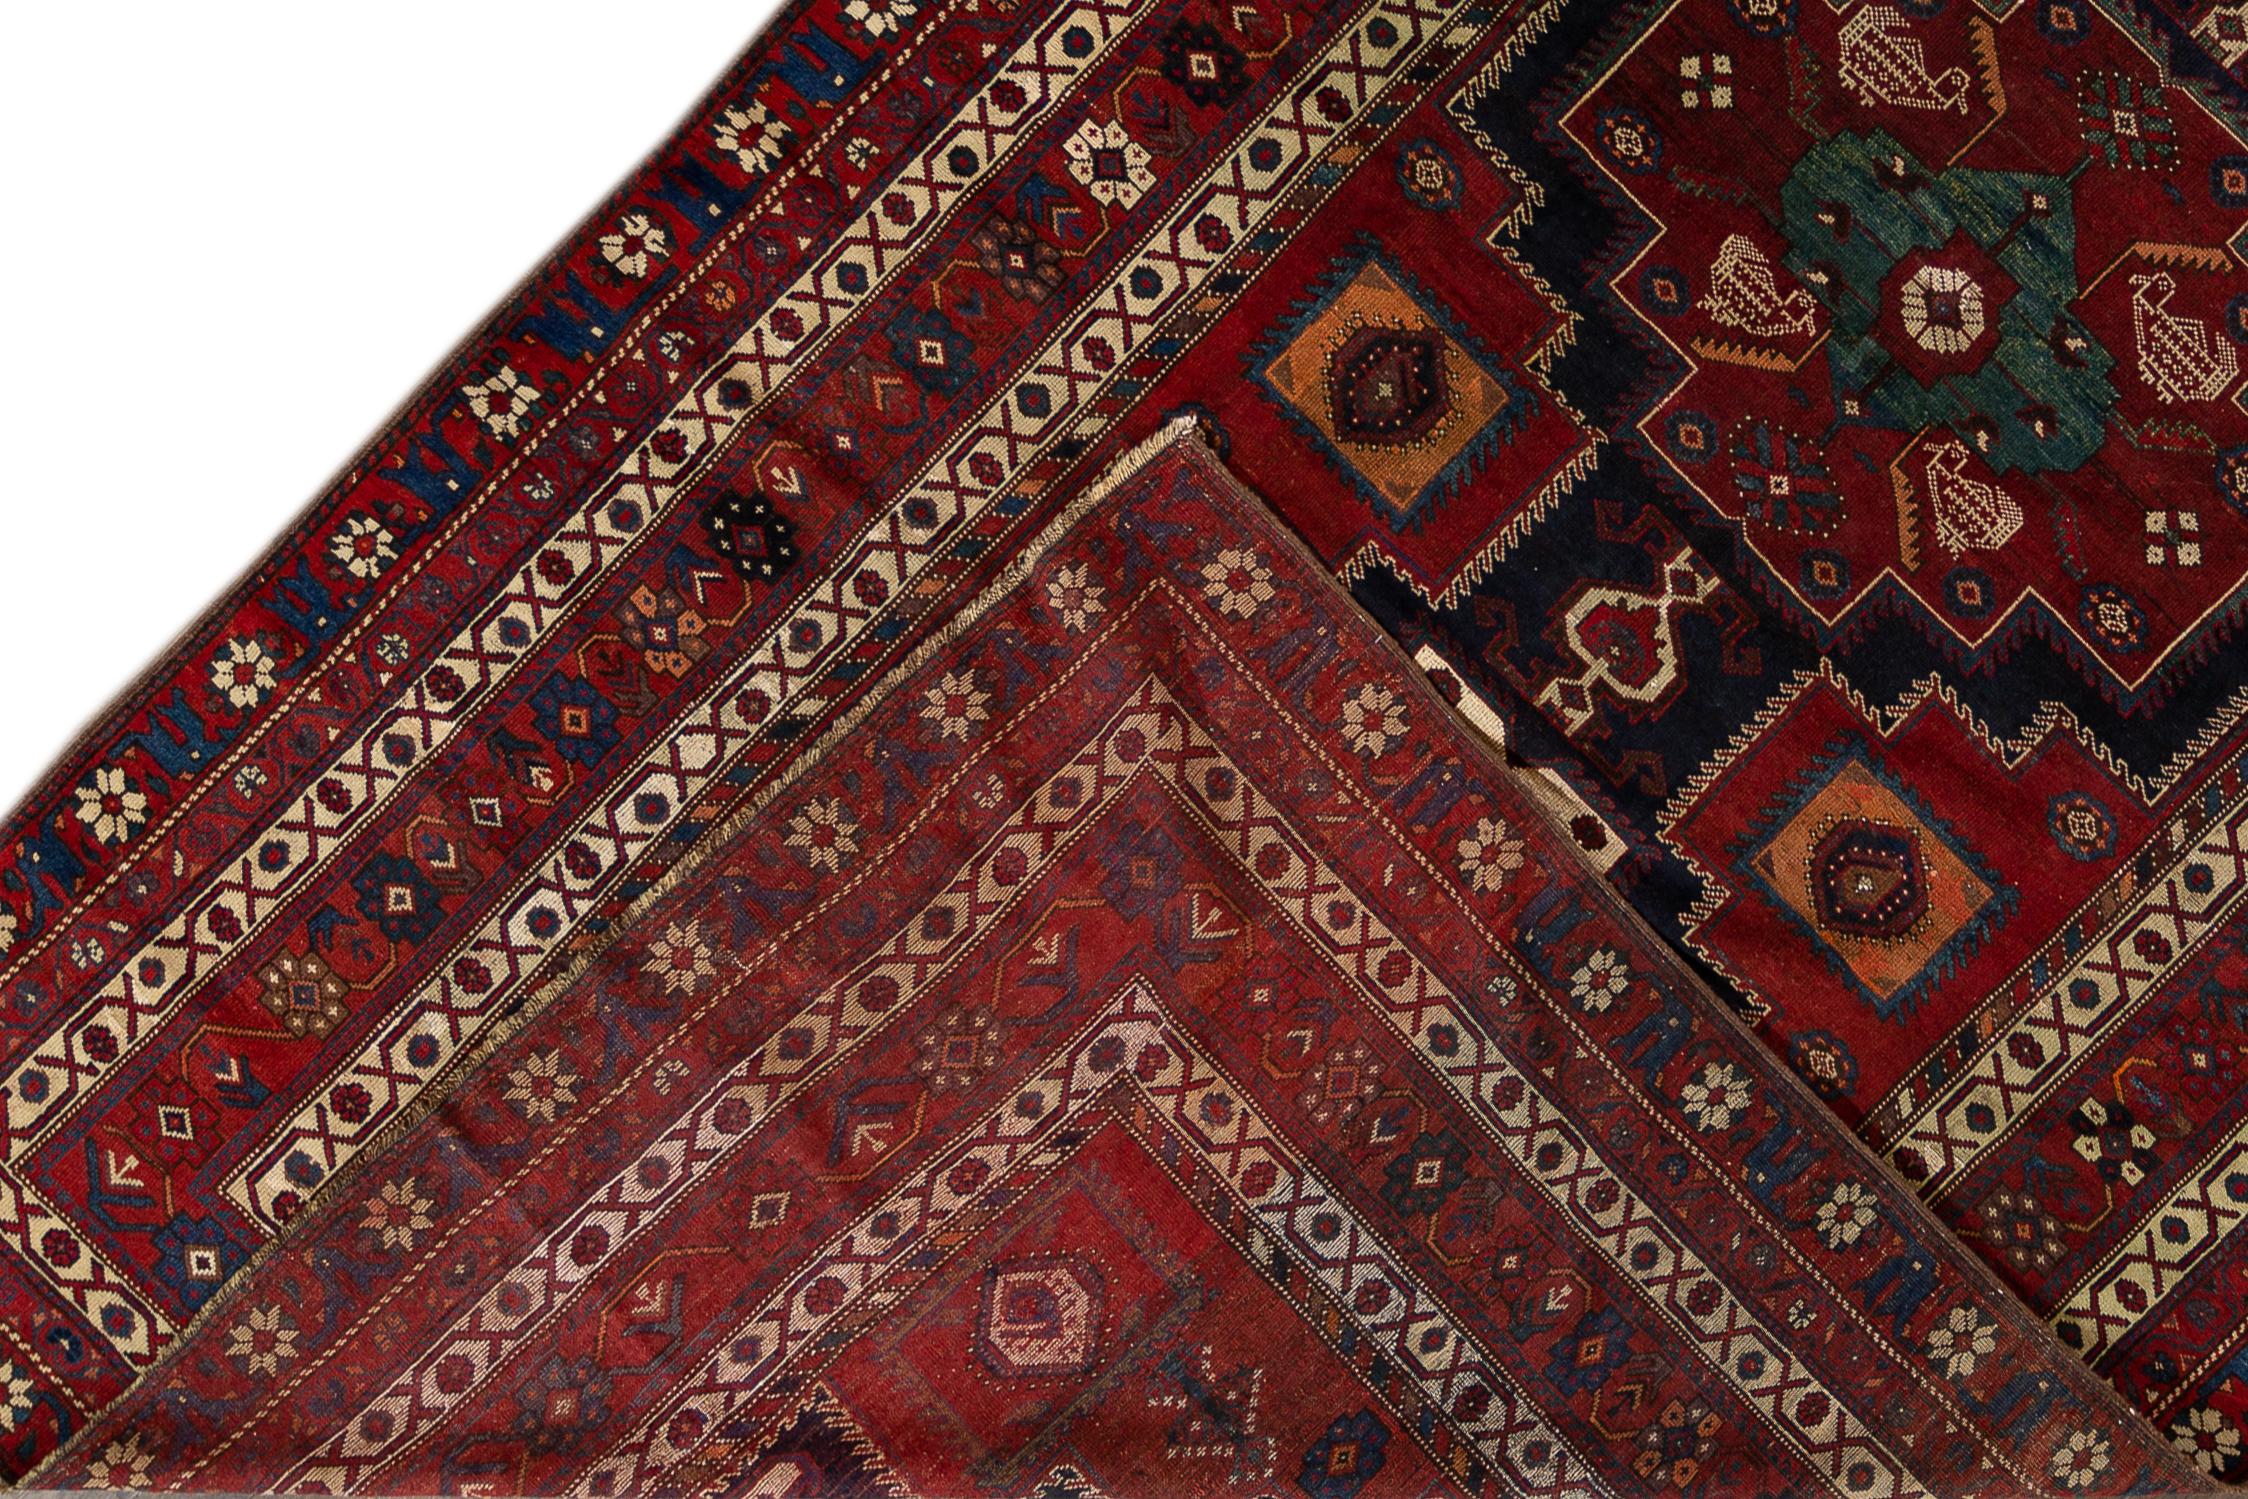 Blauer kaukasischer Teppich aus dem frühen 20. Jahrhundert. Maße: 6'9